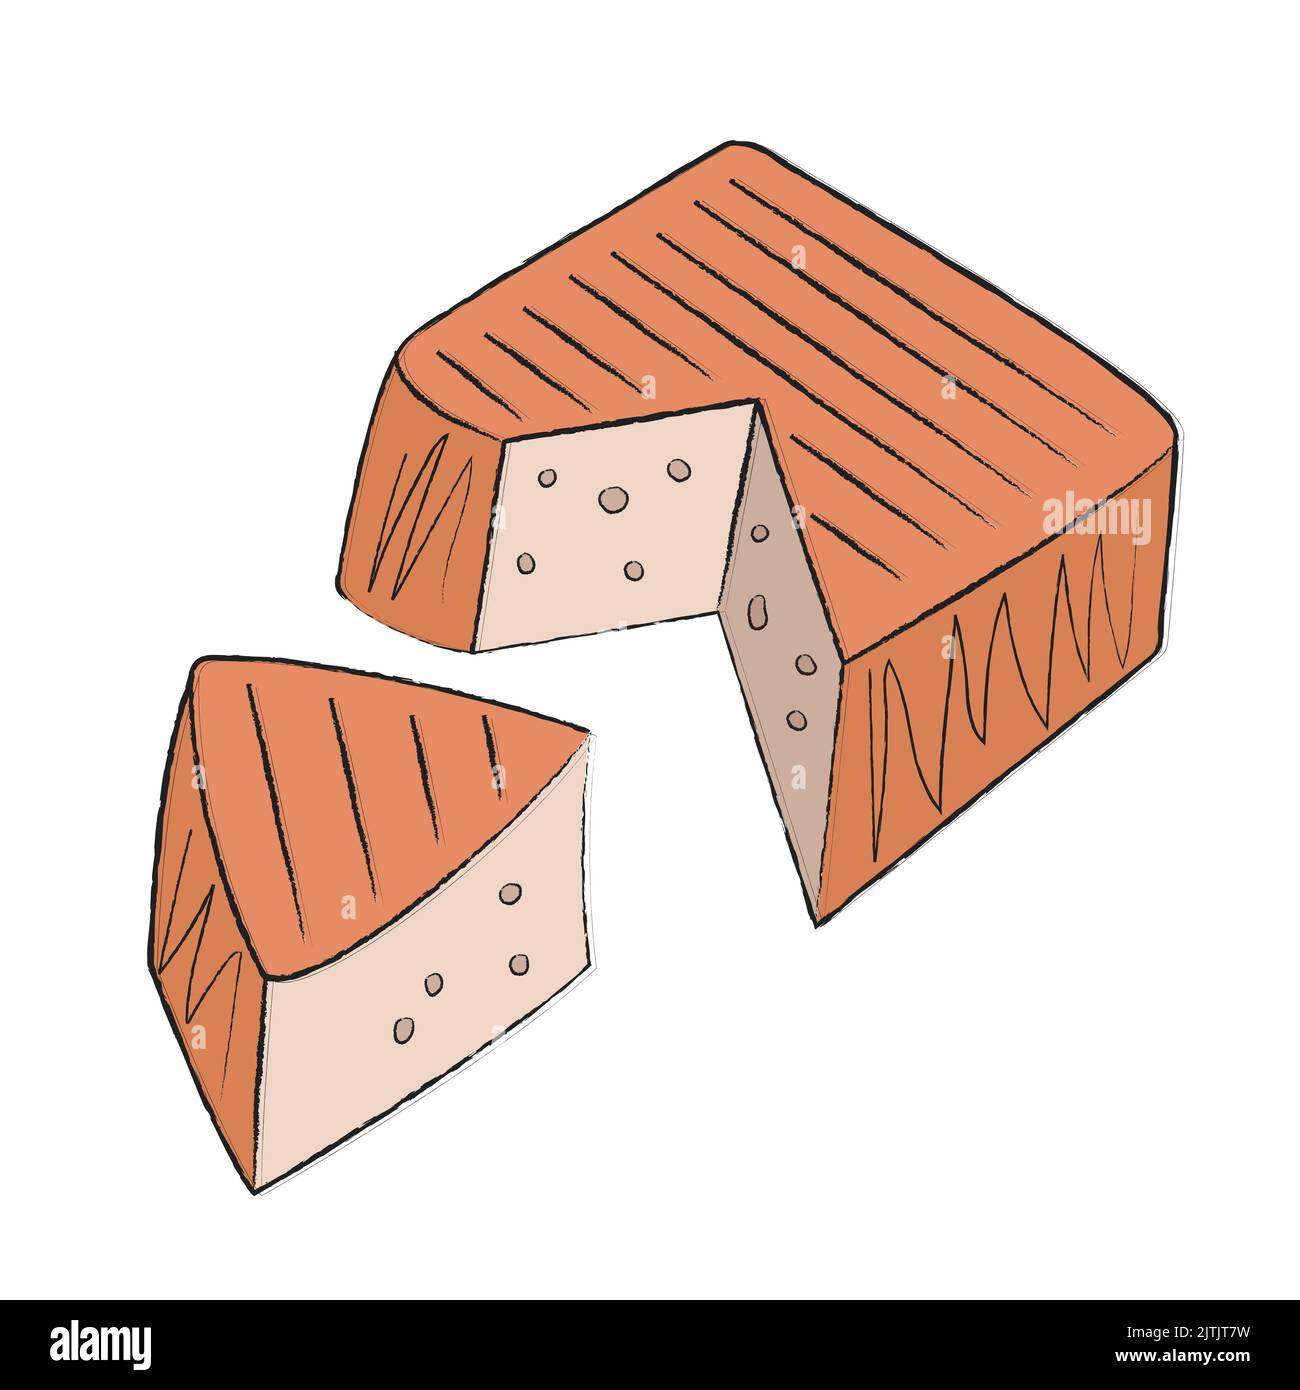 Le fromage italien carré est recouvert d'un film rouge et parsemé de poivre. Fromage en forme de gâteau avec une grande coupe. Légèrement doux Illustration de Vecteur